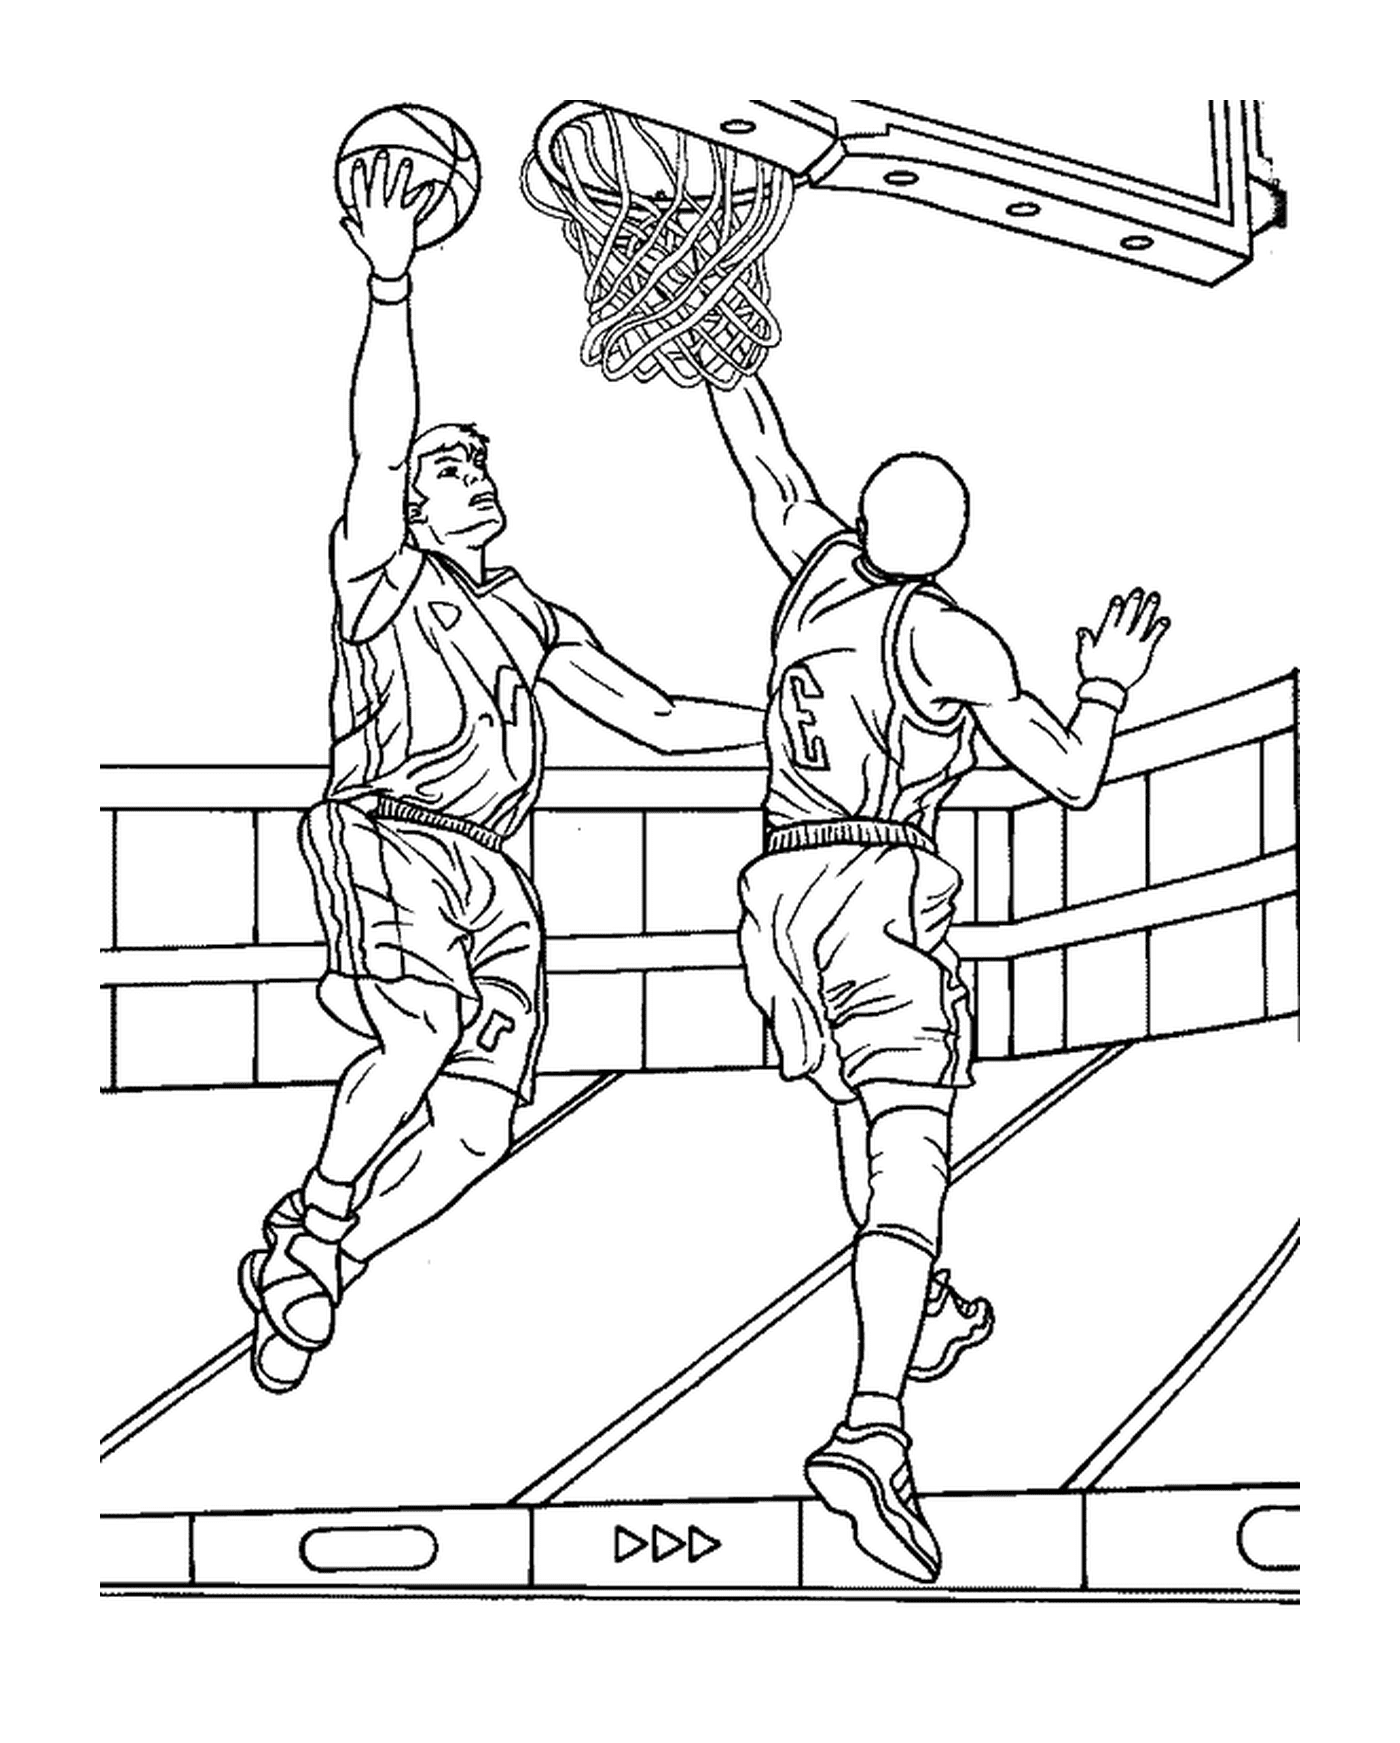  篮球运动员尽管有辩护人 仍会得篮球篮球得分 